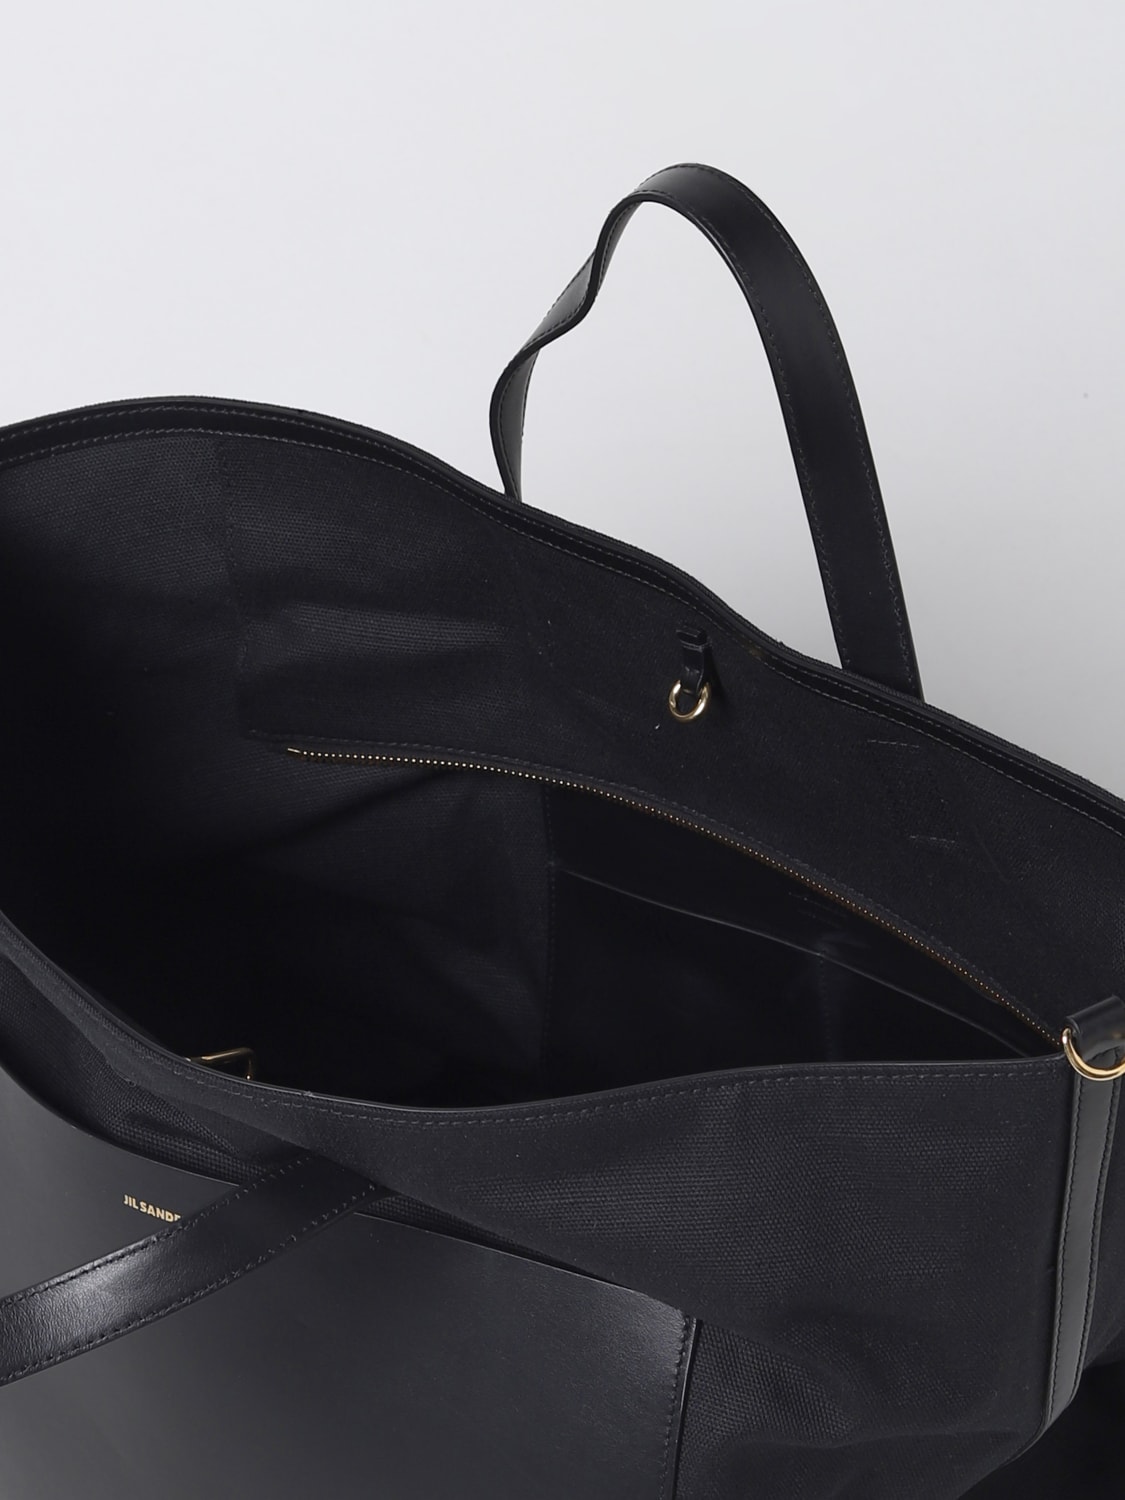 JIL SANDER: tote bags for woman - Black | Jil Sander tote bags ...